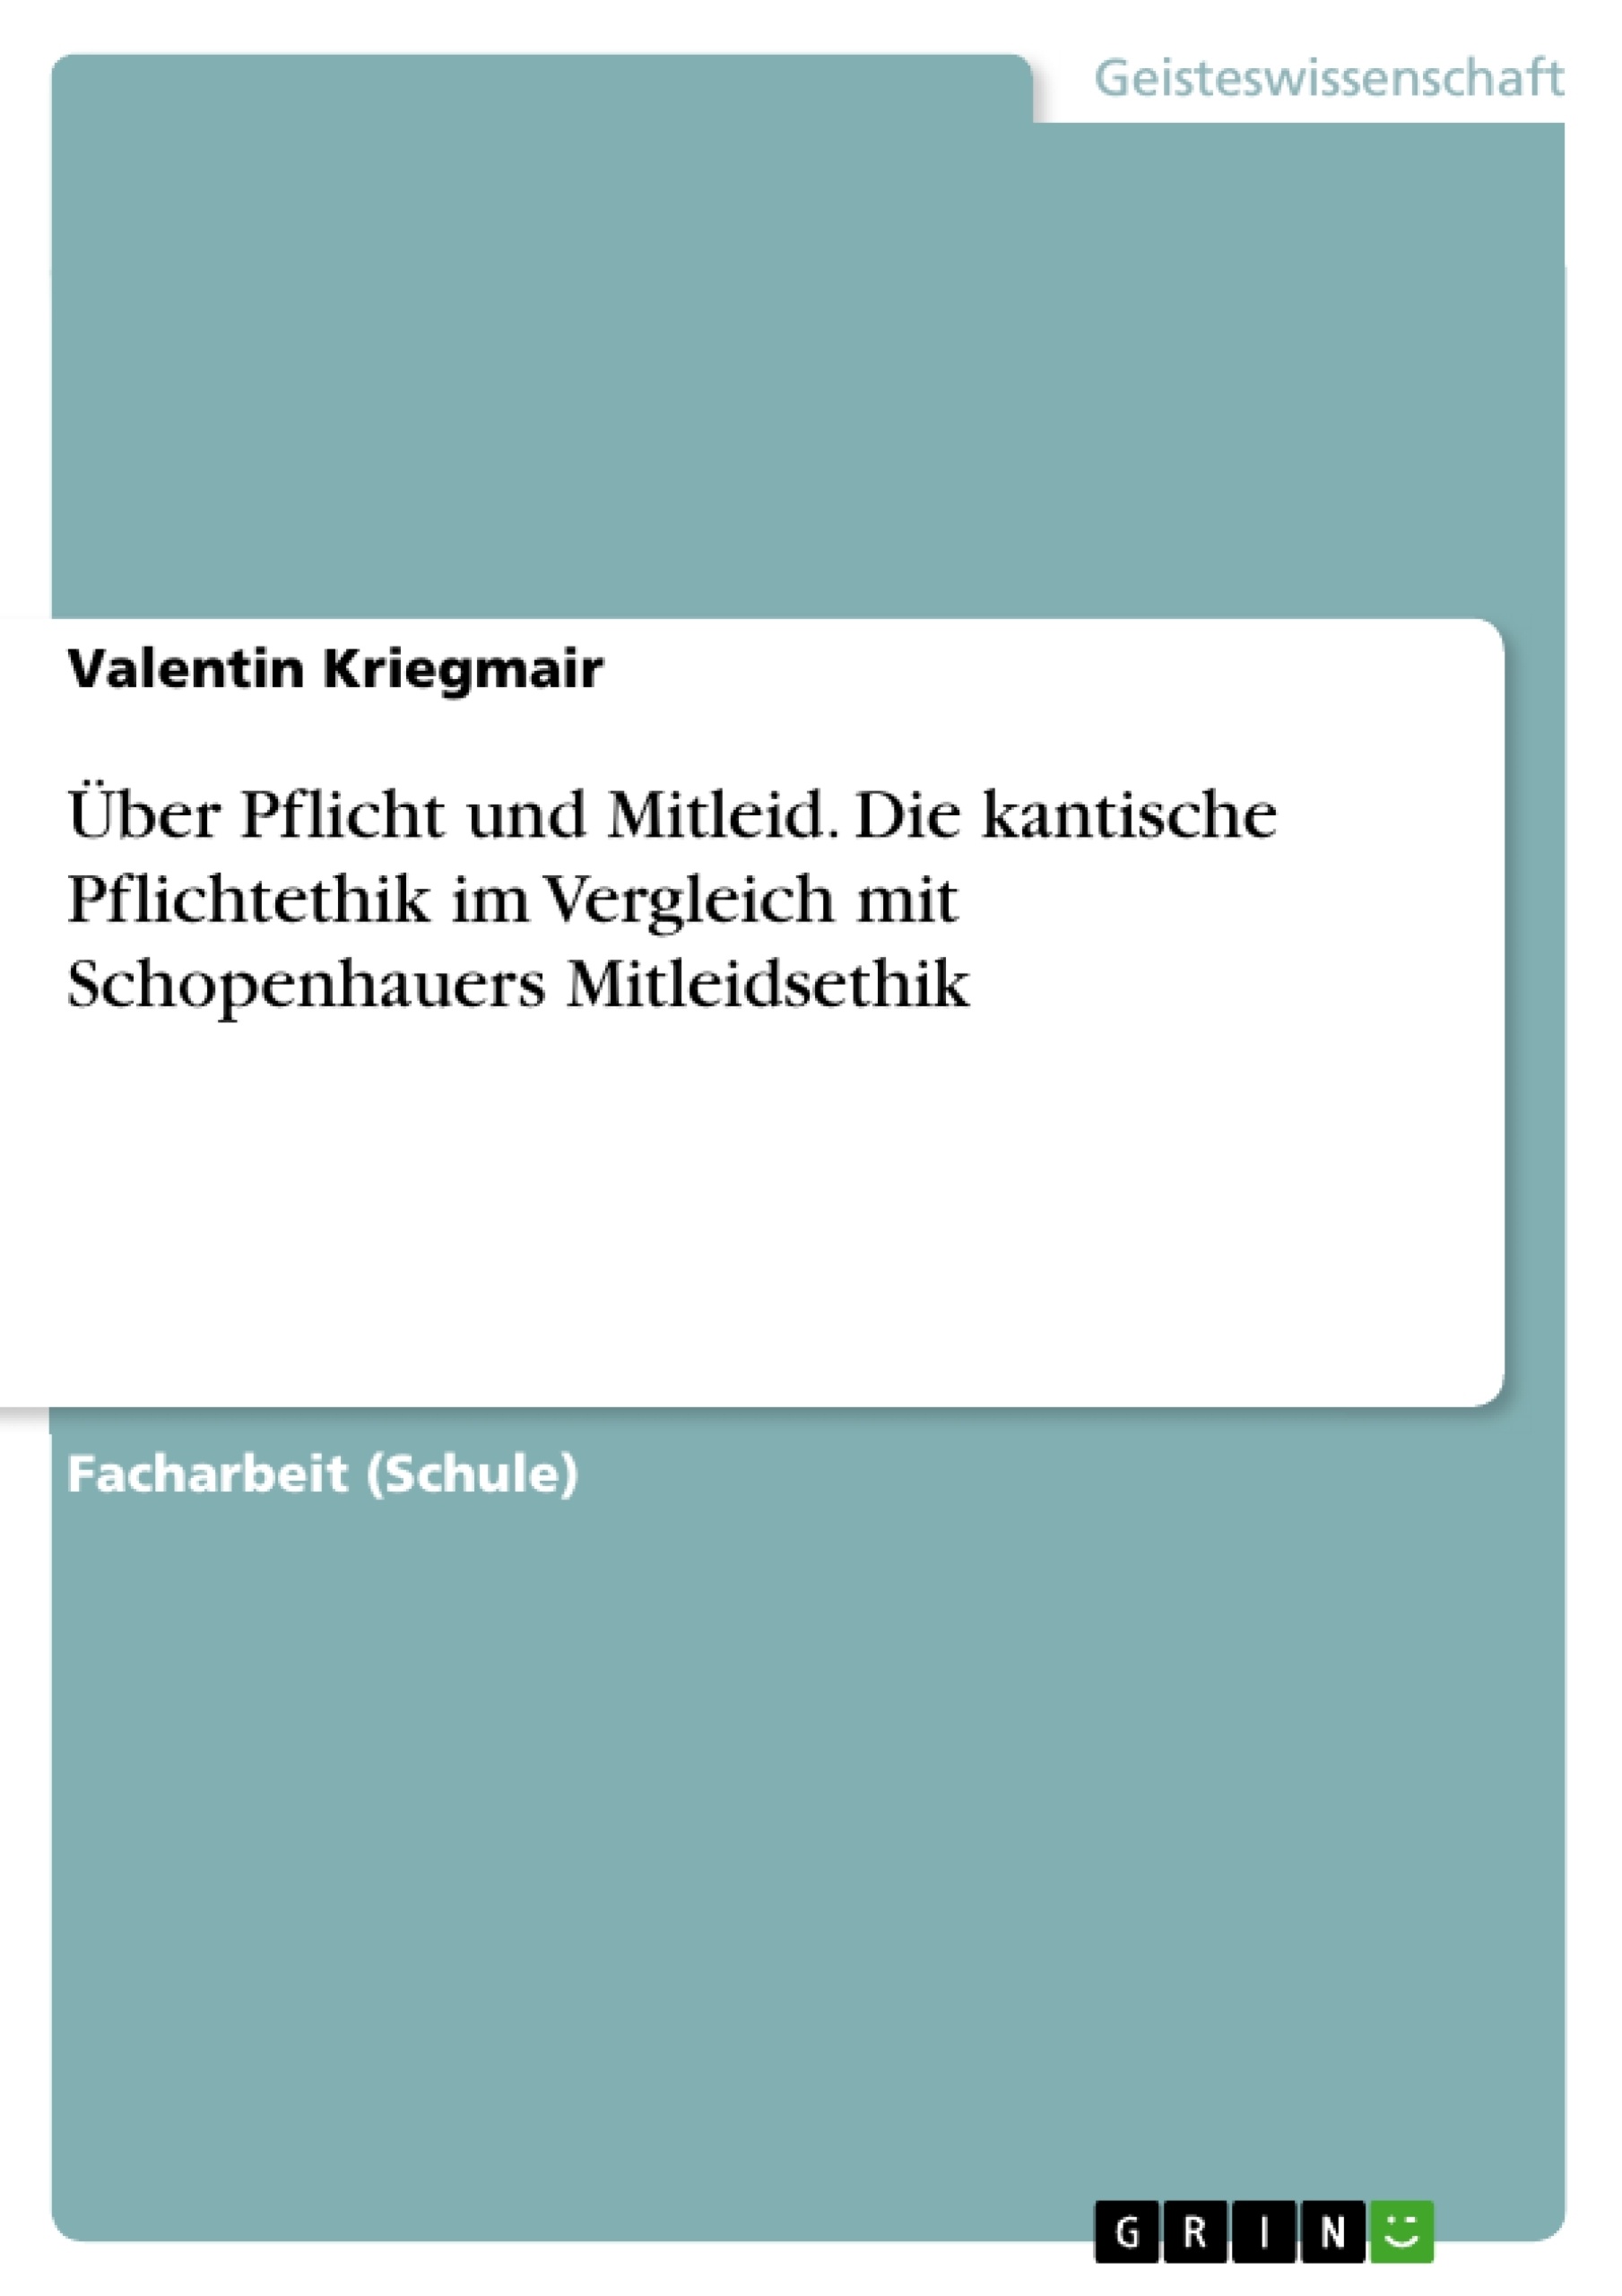 Title: Über Pflicht und Mitleid. Die kantische Pflichtethik im Vergleich mit Schopenhauers Mitleidsethik